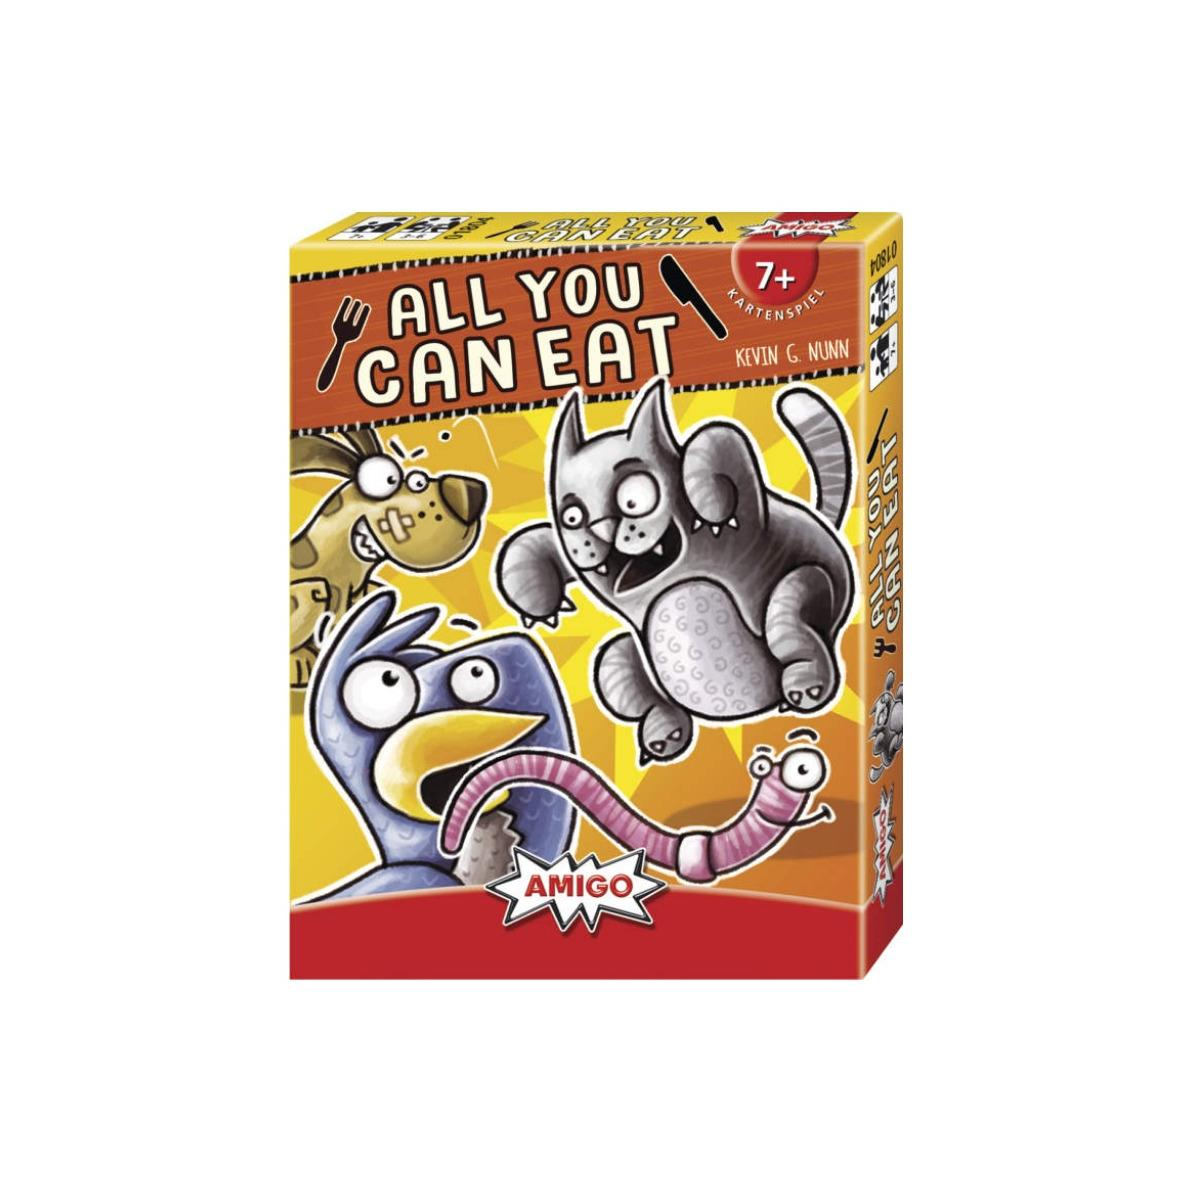 AMIGO Eat - you can Kartenspiel All - Amigo Kartenspiel